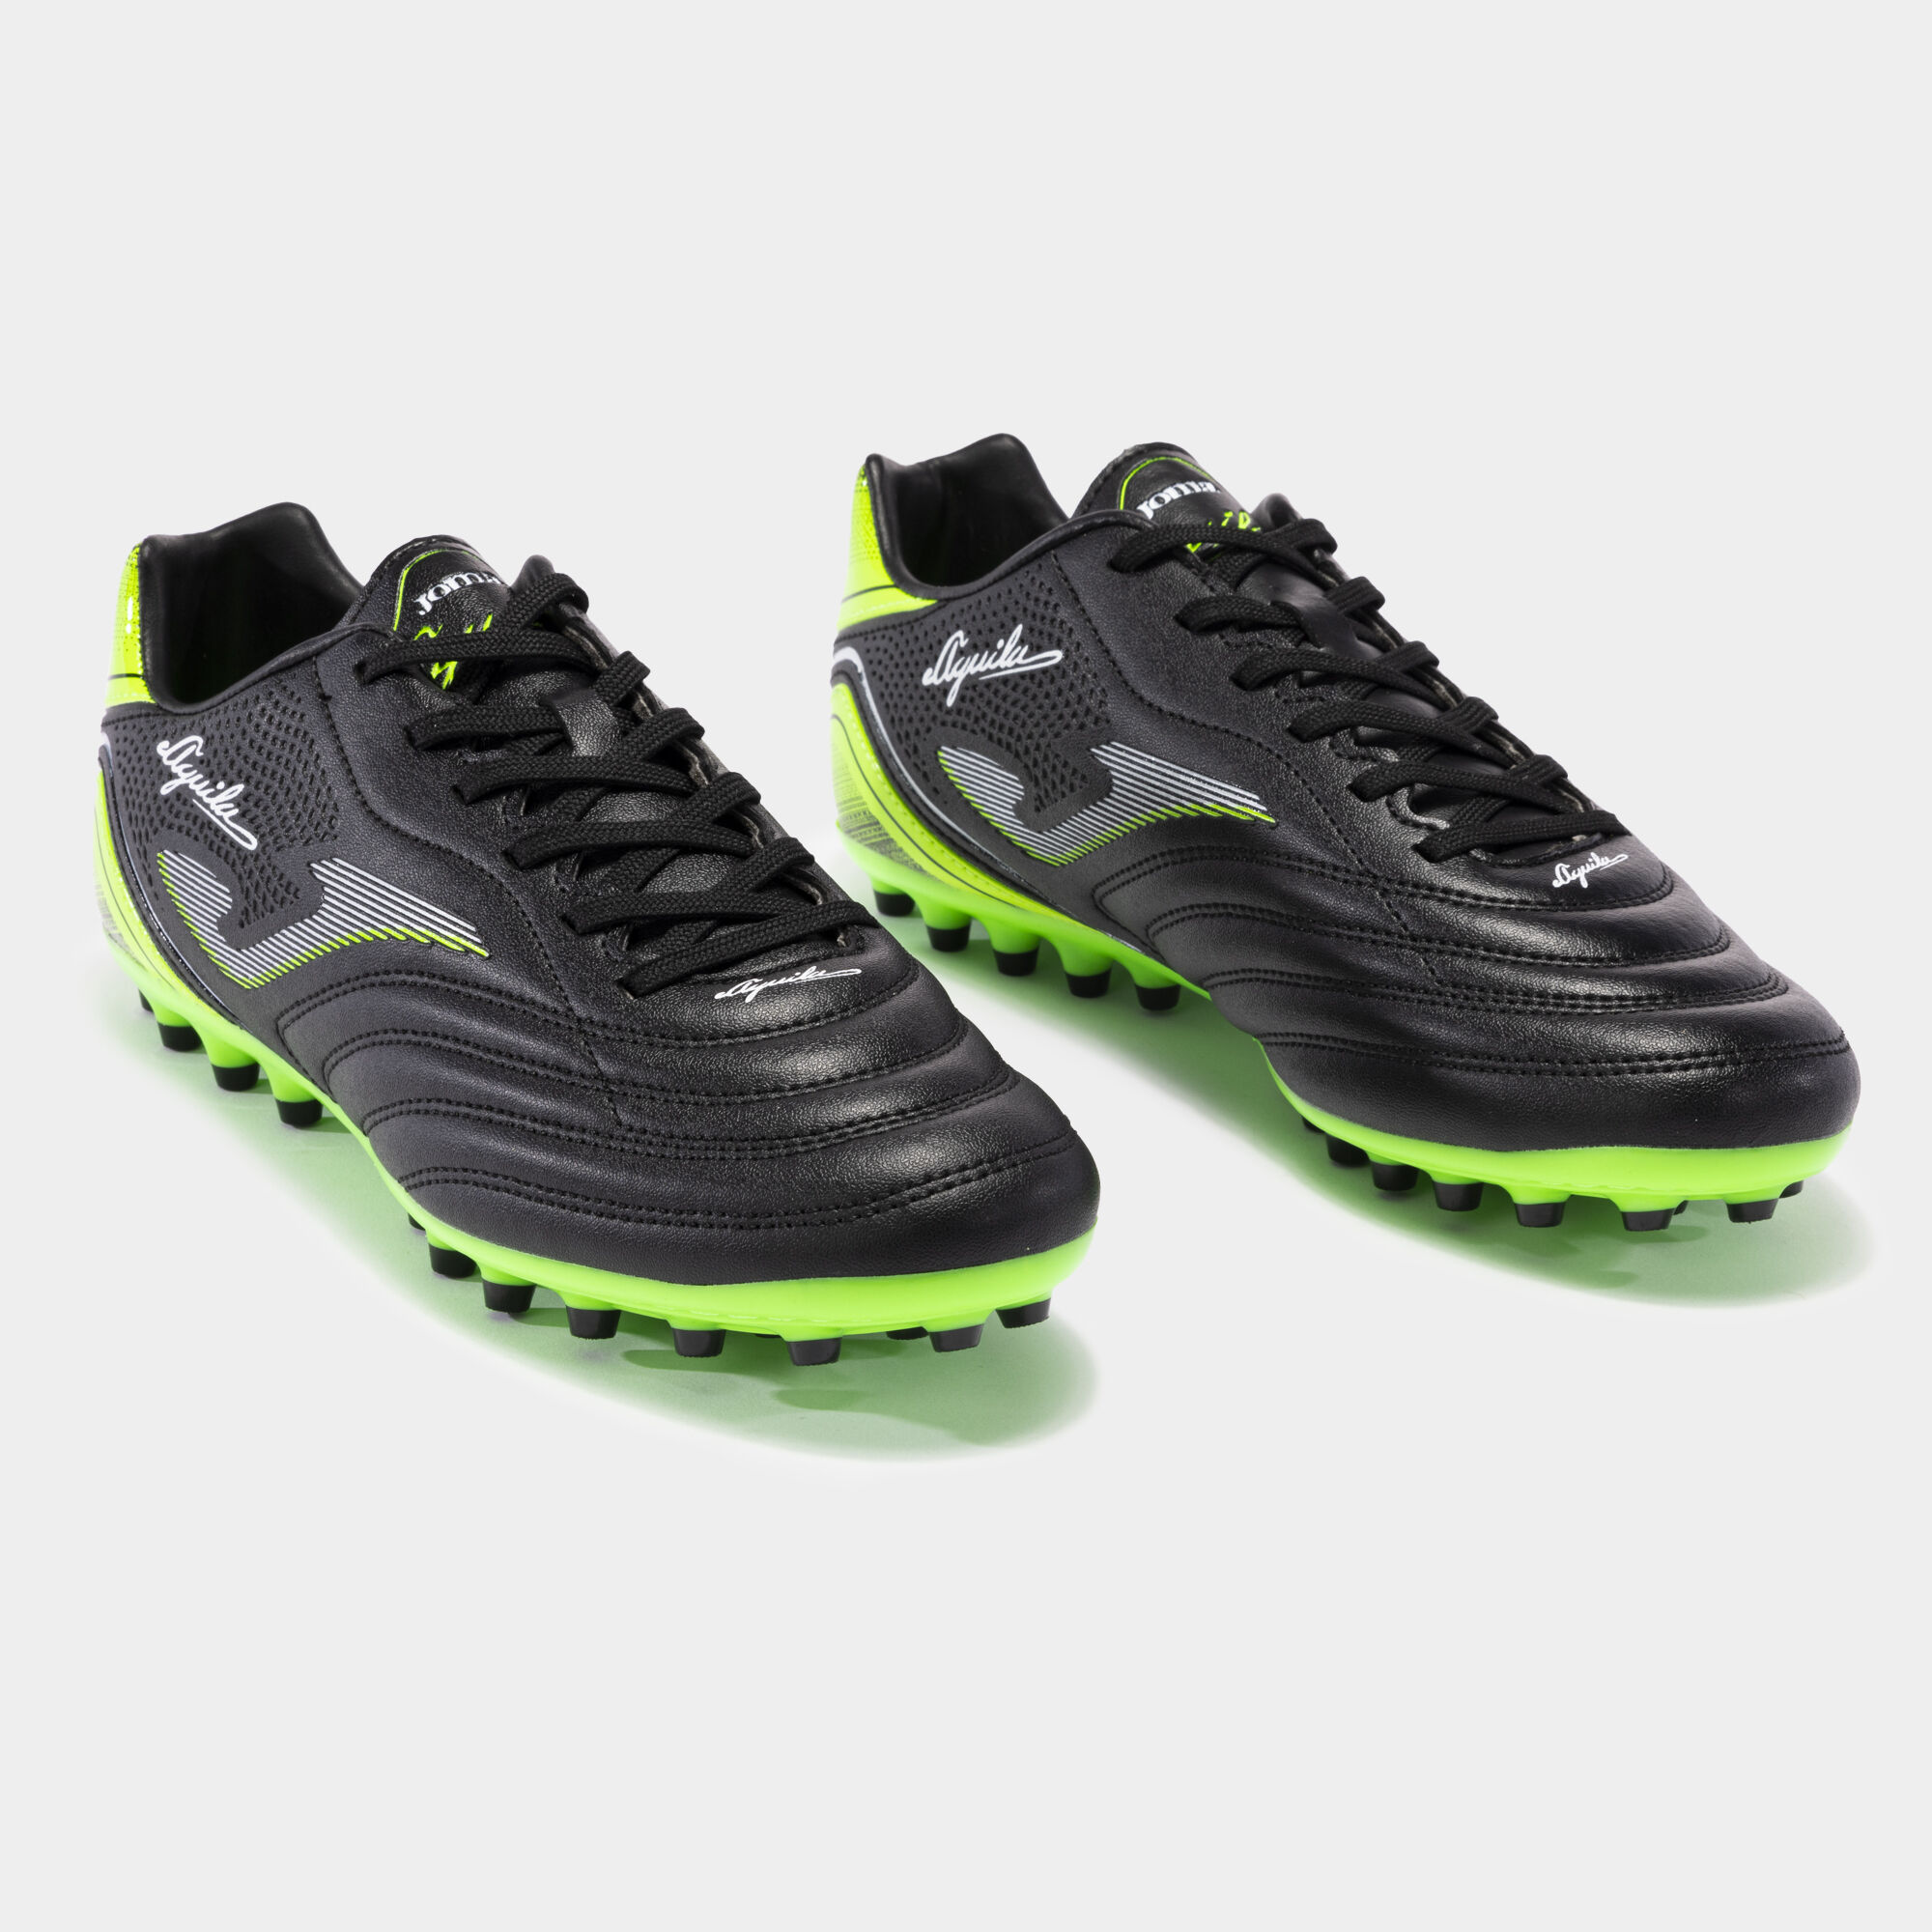 Buty piłkarskie Aguila 22 sztuczna trawa AG czarny fluorescencyjny zielony